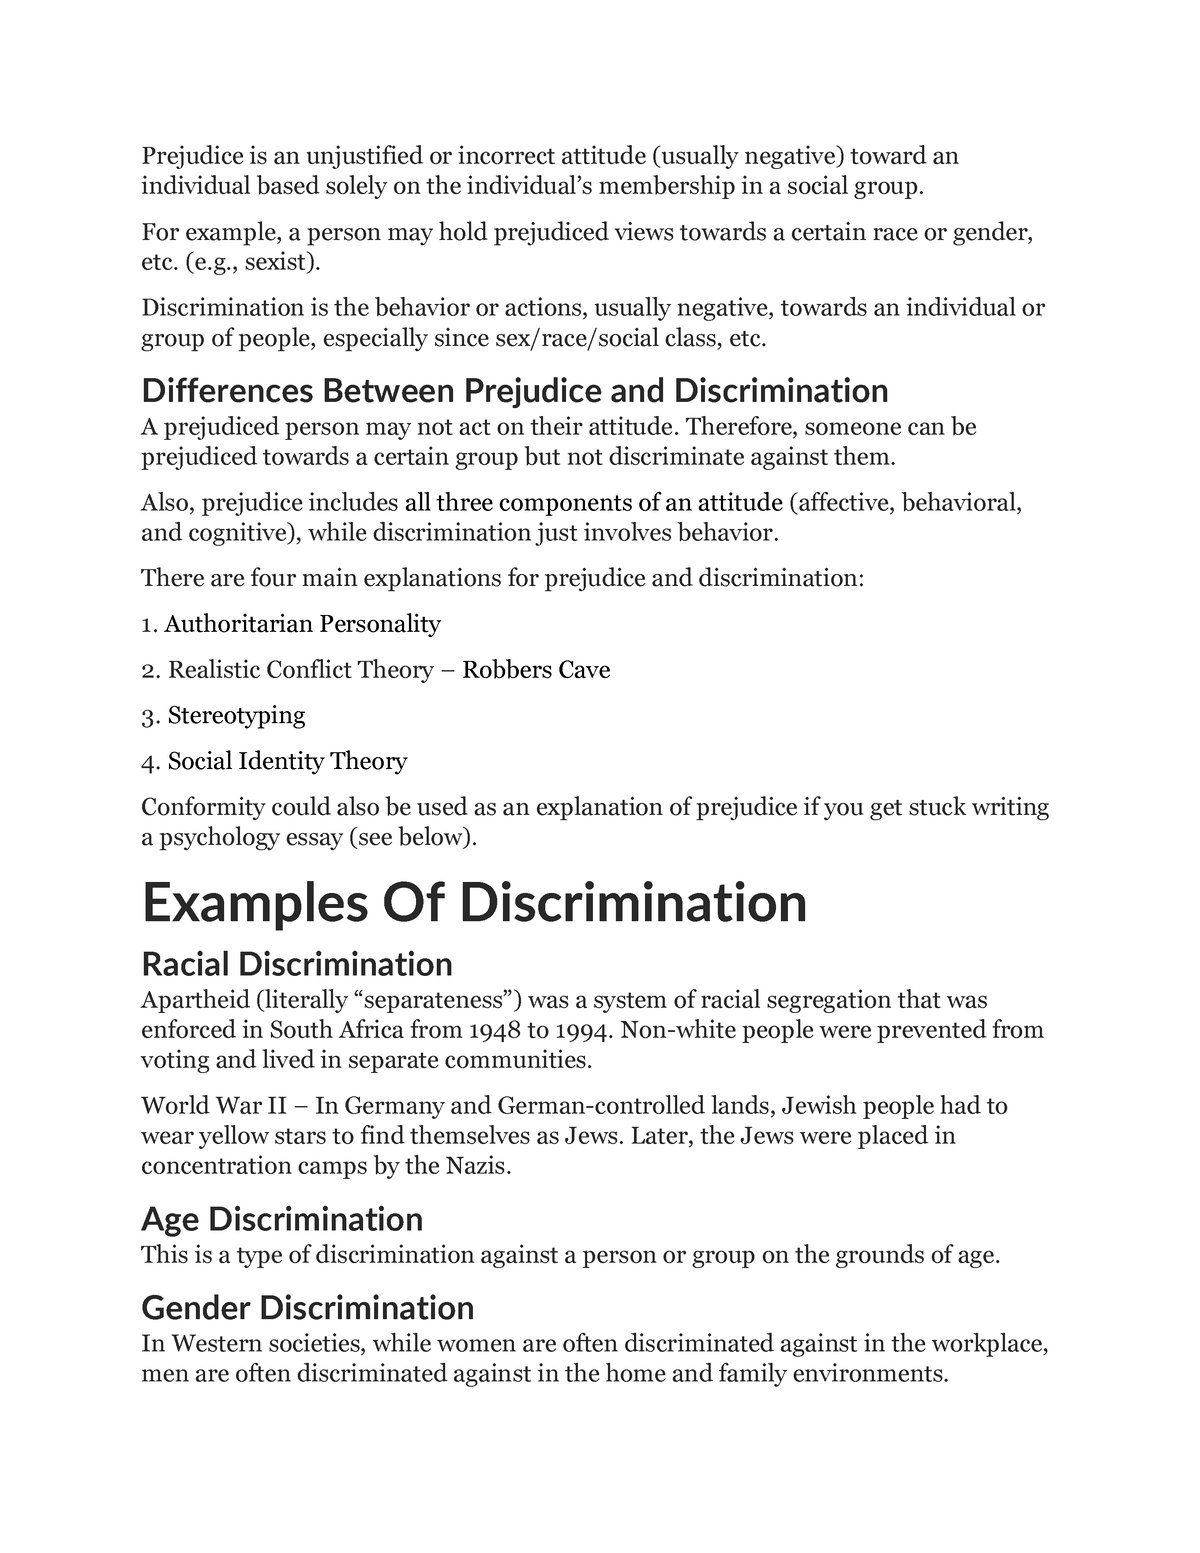 prejudice and discrimination psychology essay